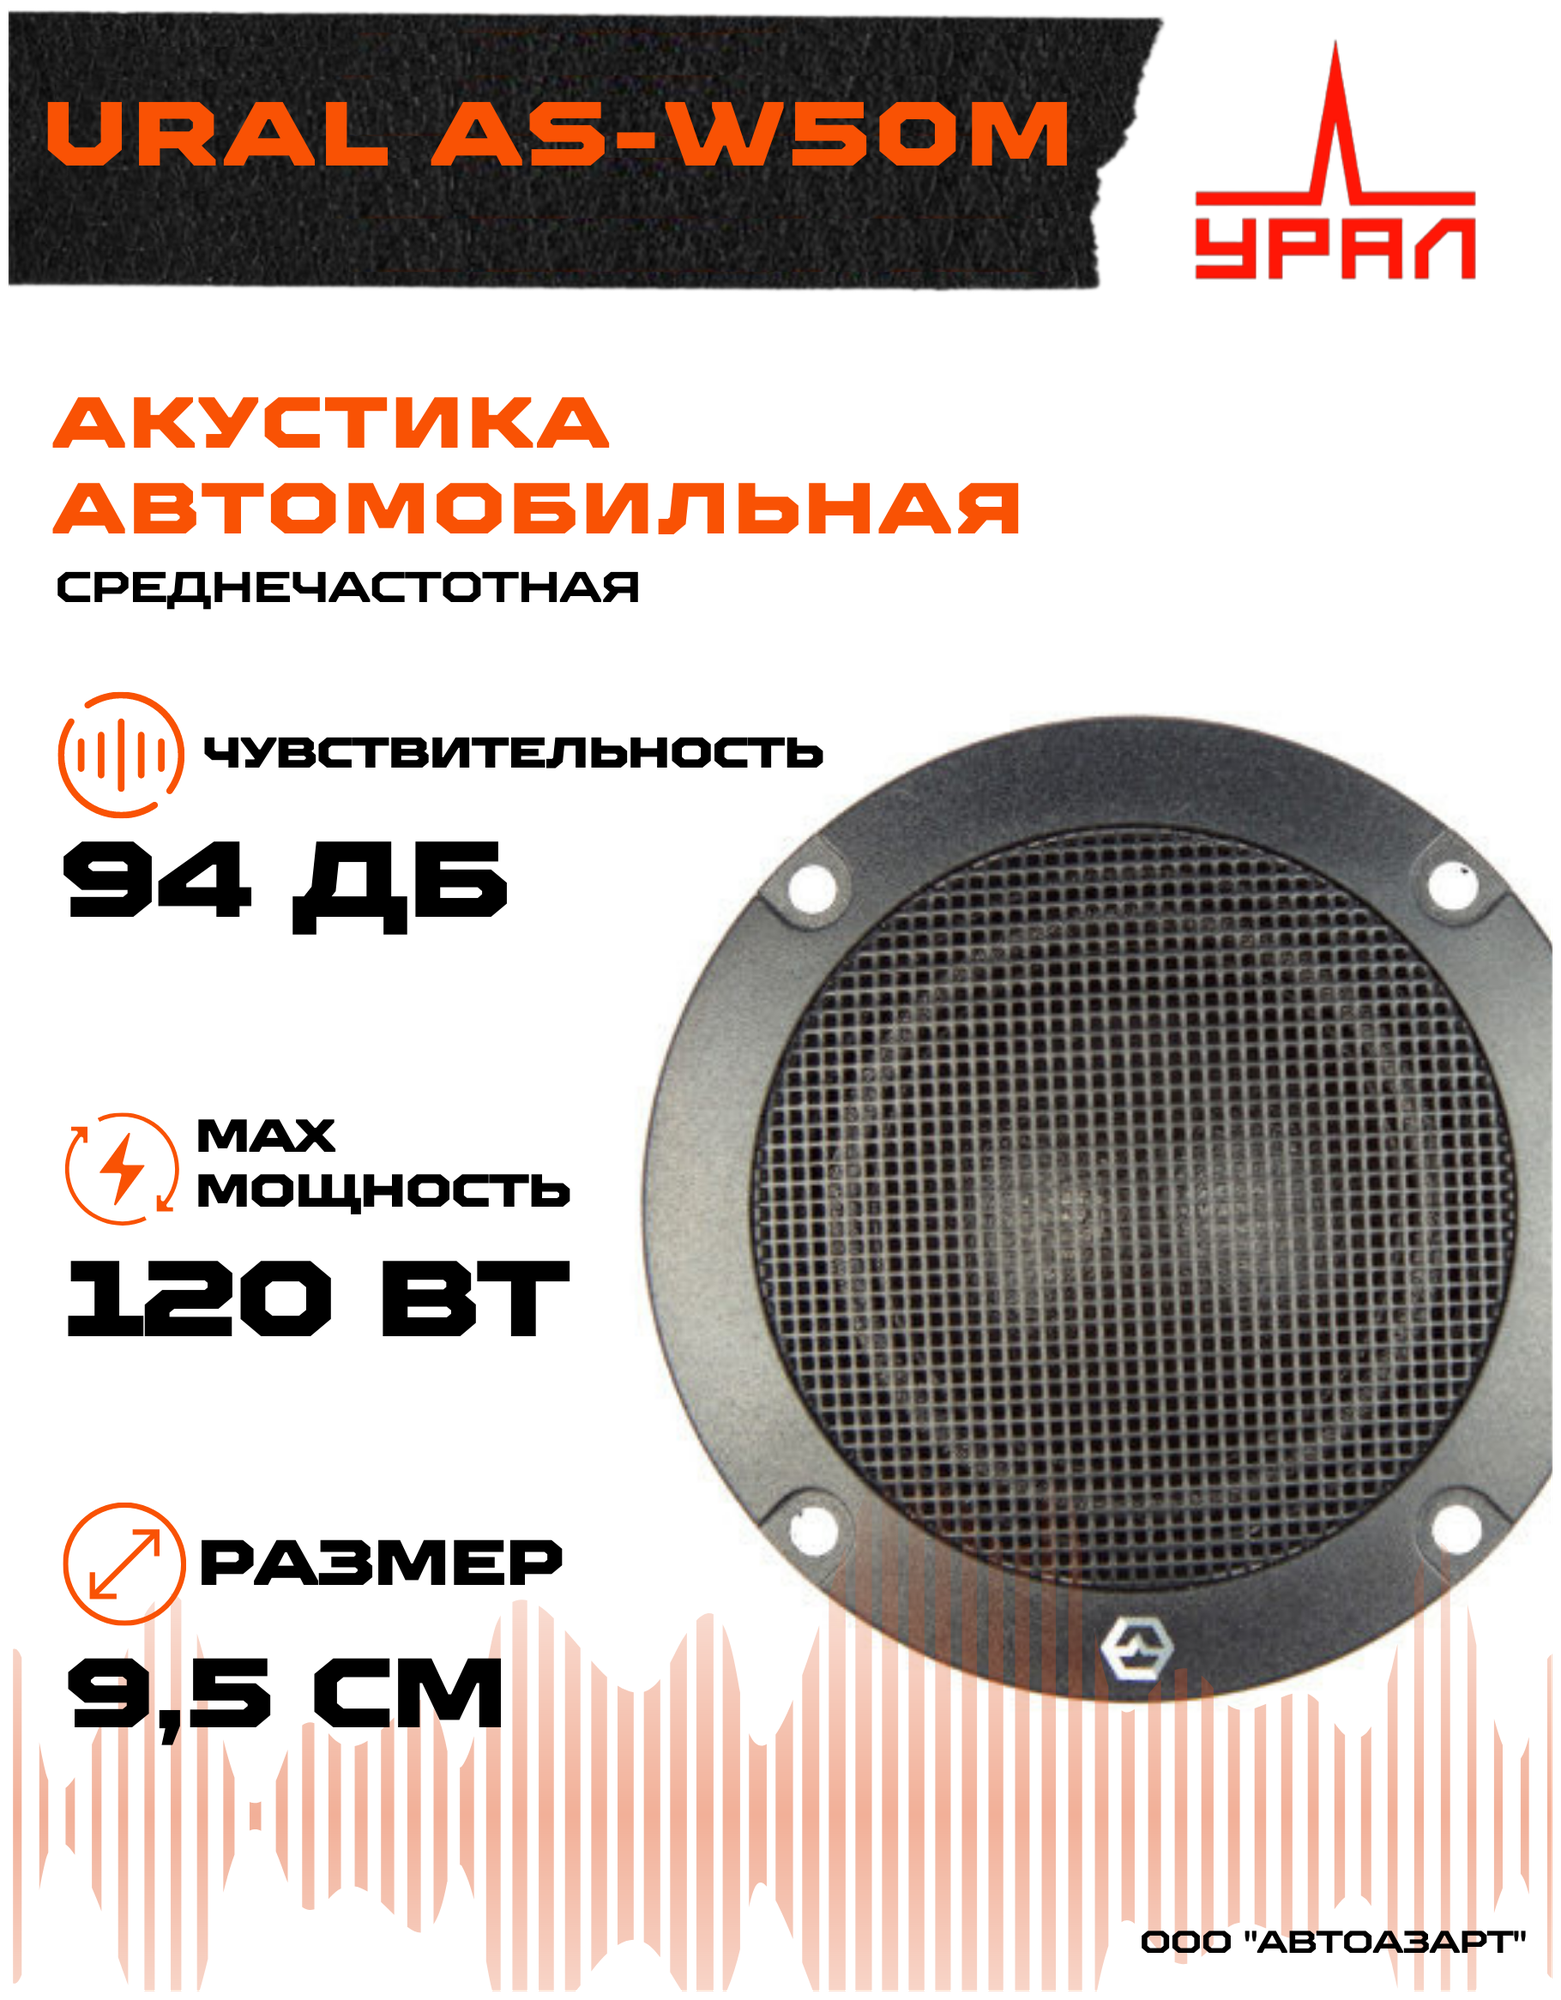 Акустическая система Ural AS-W50M